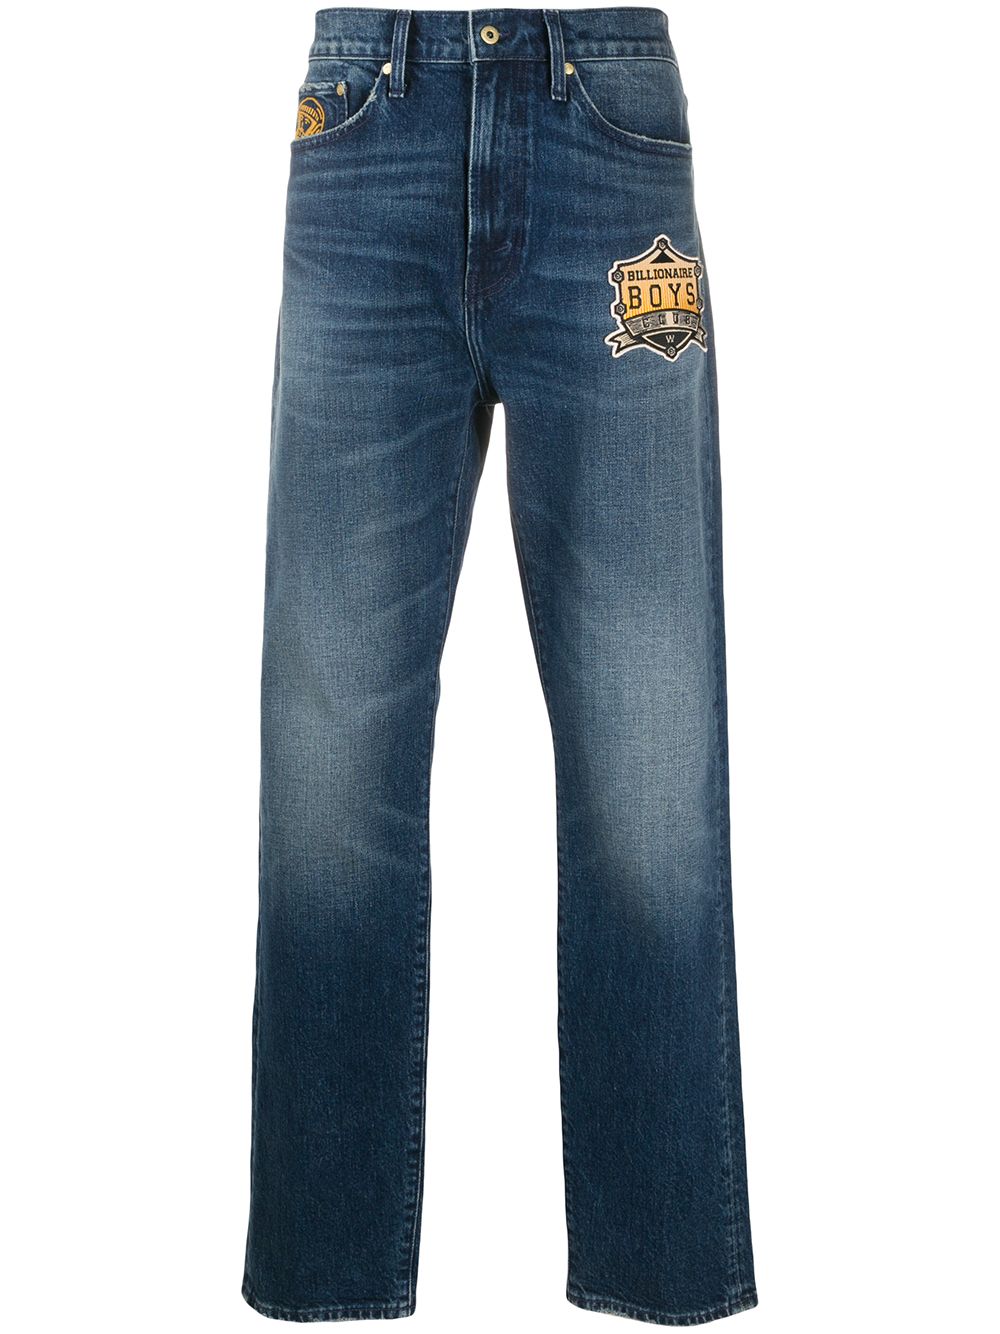 фото Billionaire boys club джинсы прямого кроя с вышивкой